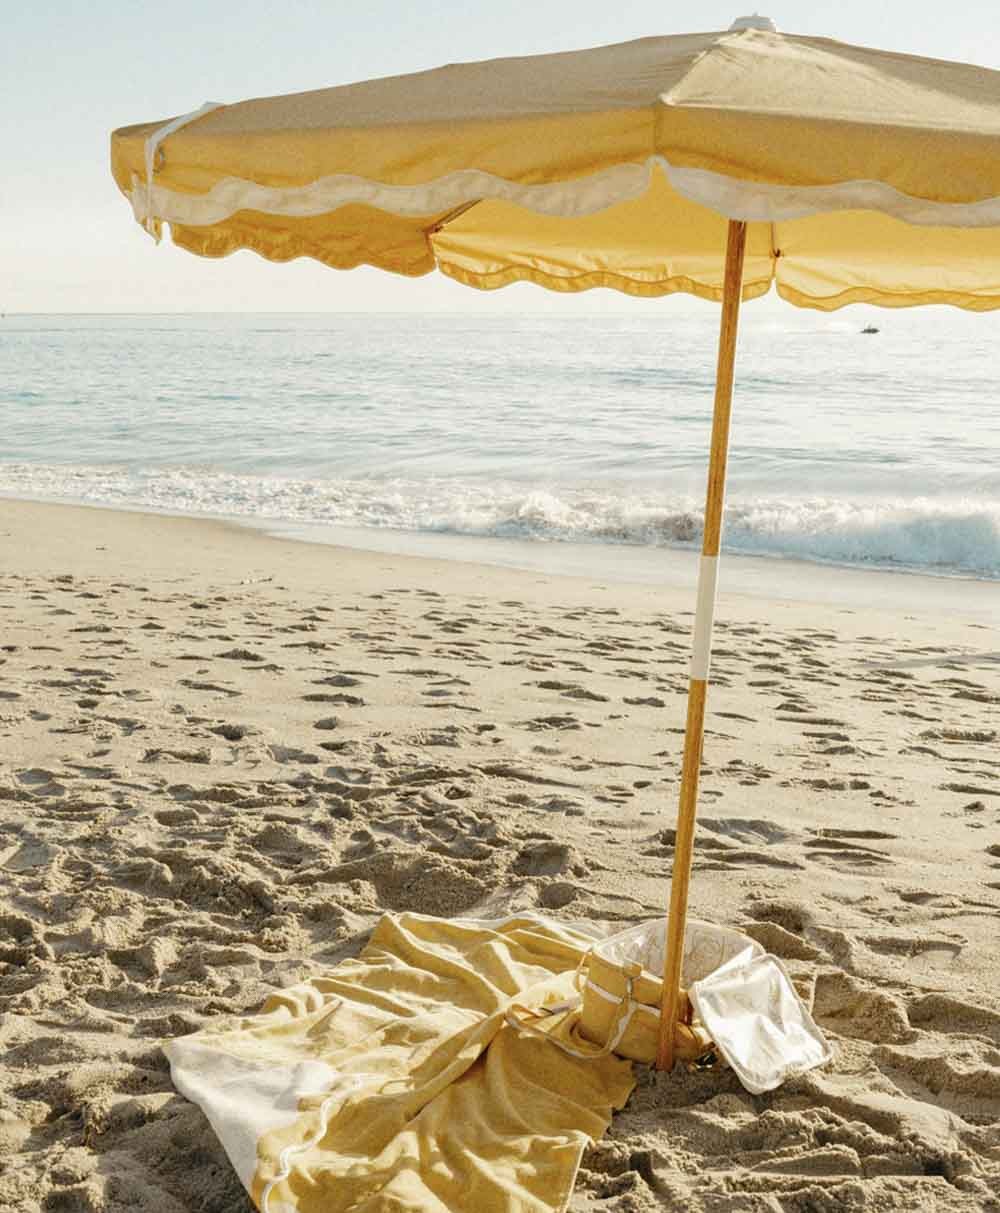 Moodbild des Sonnenschirms Amalfi Beach Umbrella  im Rivie Mimosa Design aus der 2024 Sommer Kollektion von Business & Pleasure im RAUM concept store.